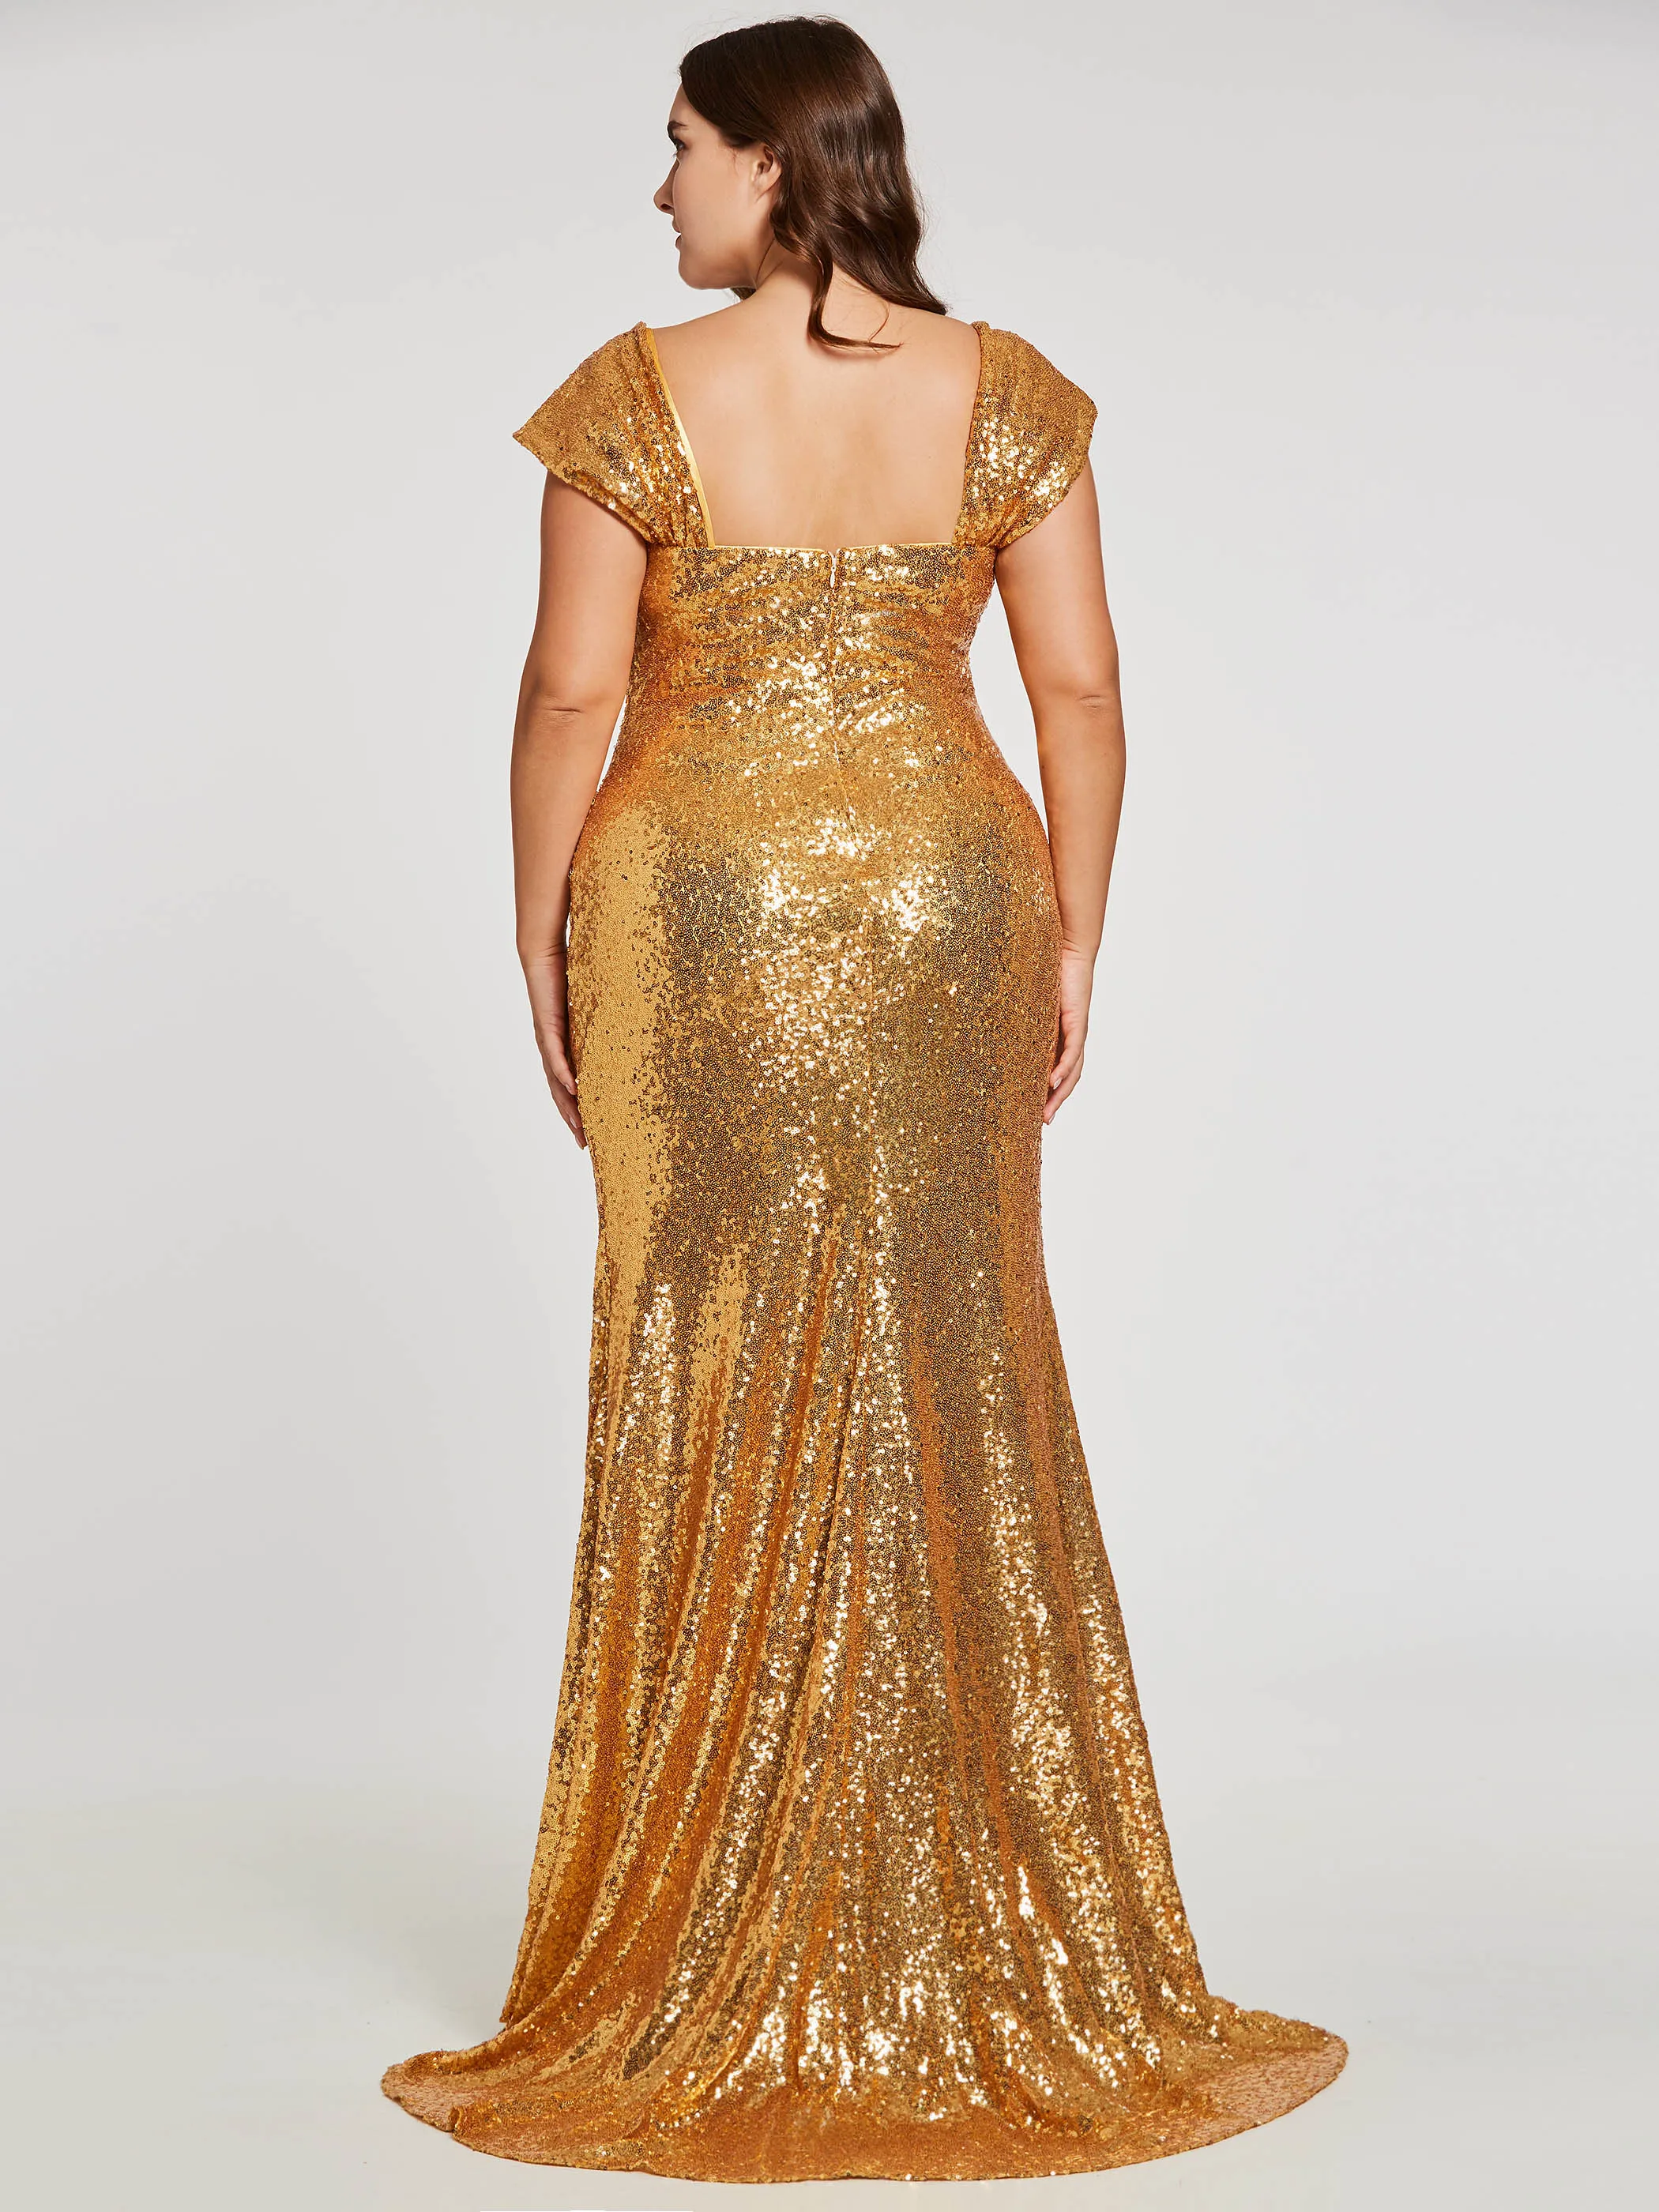 Dressv размера плюс Золотое вечернее платье Русалка с квадратным вырезом длина до пола рукав-крылышко Блестки свадебное вечернее платье